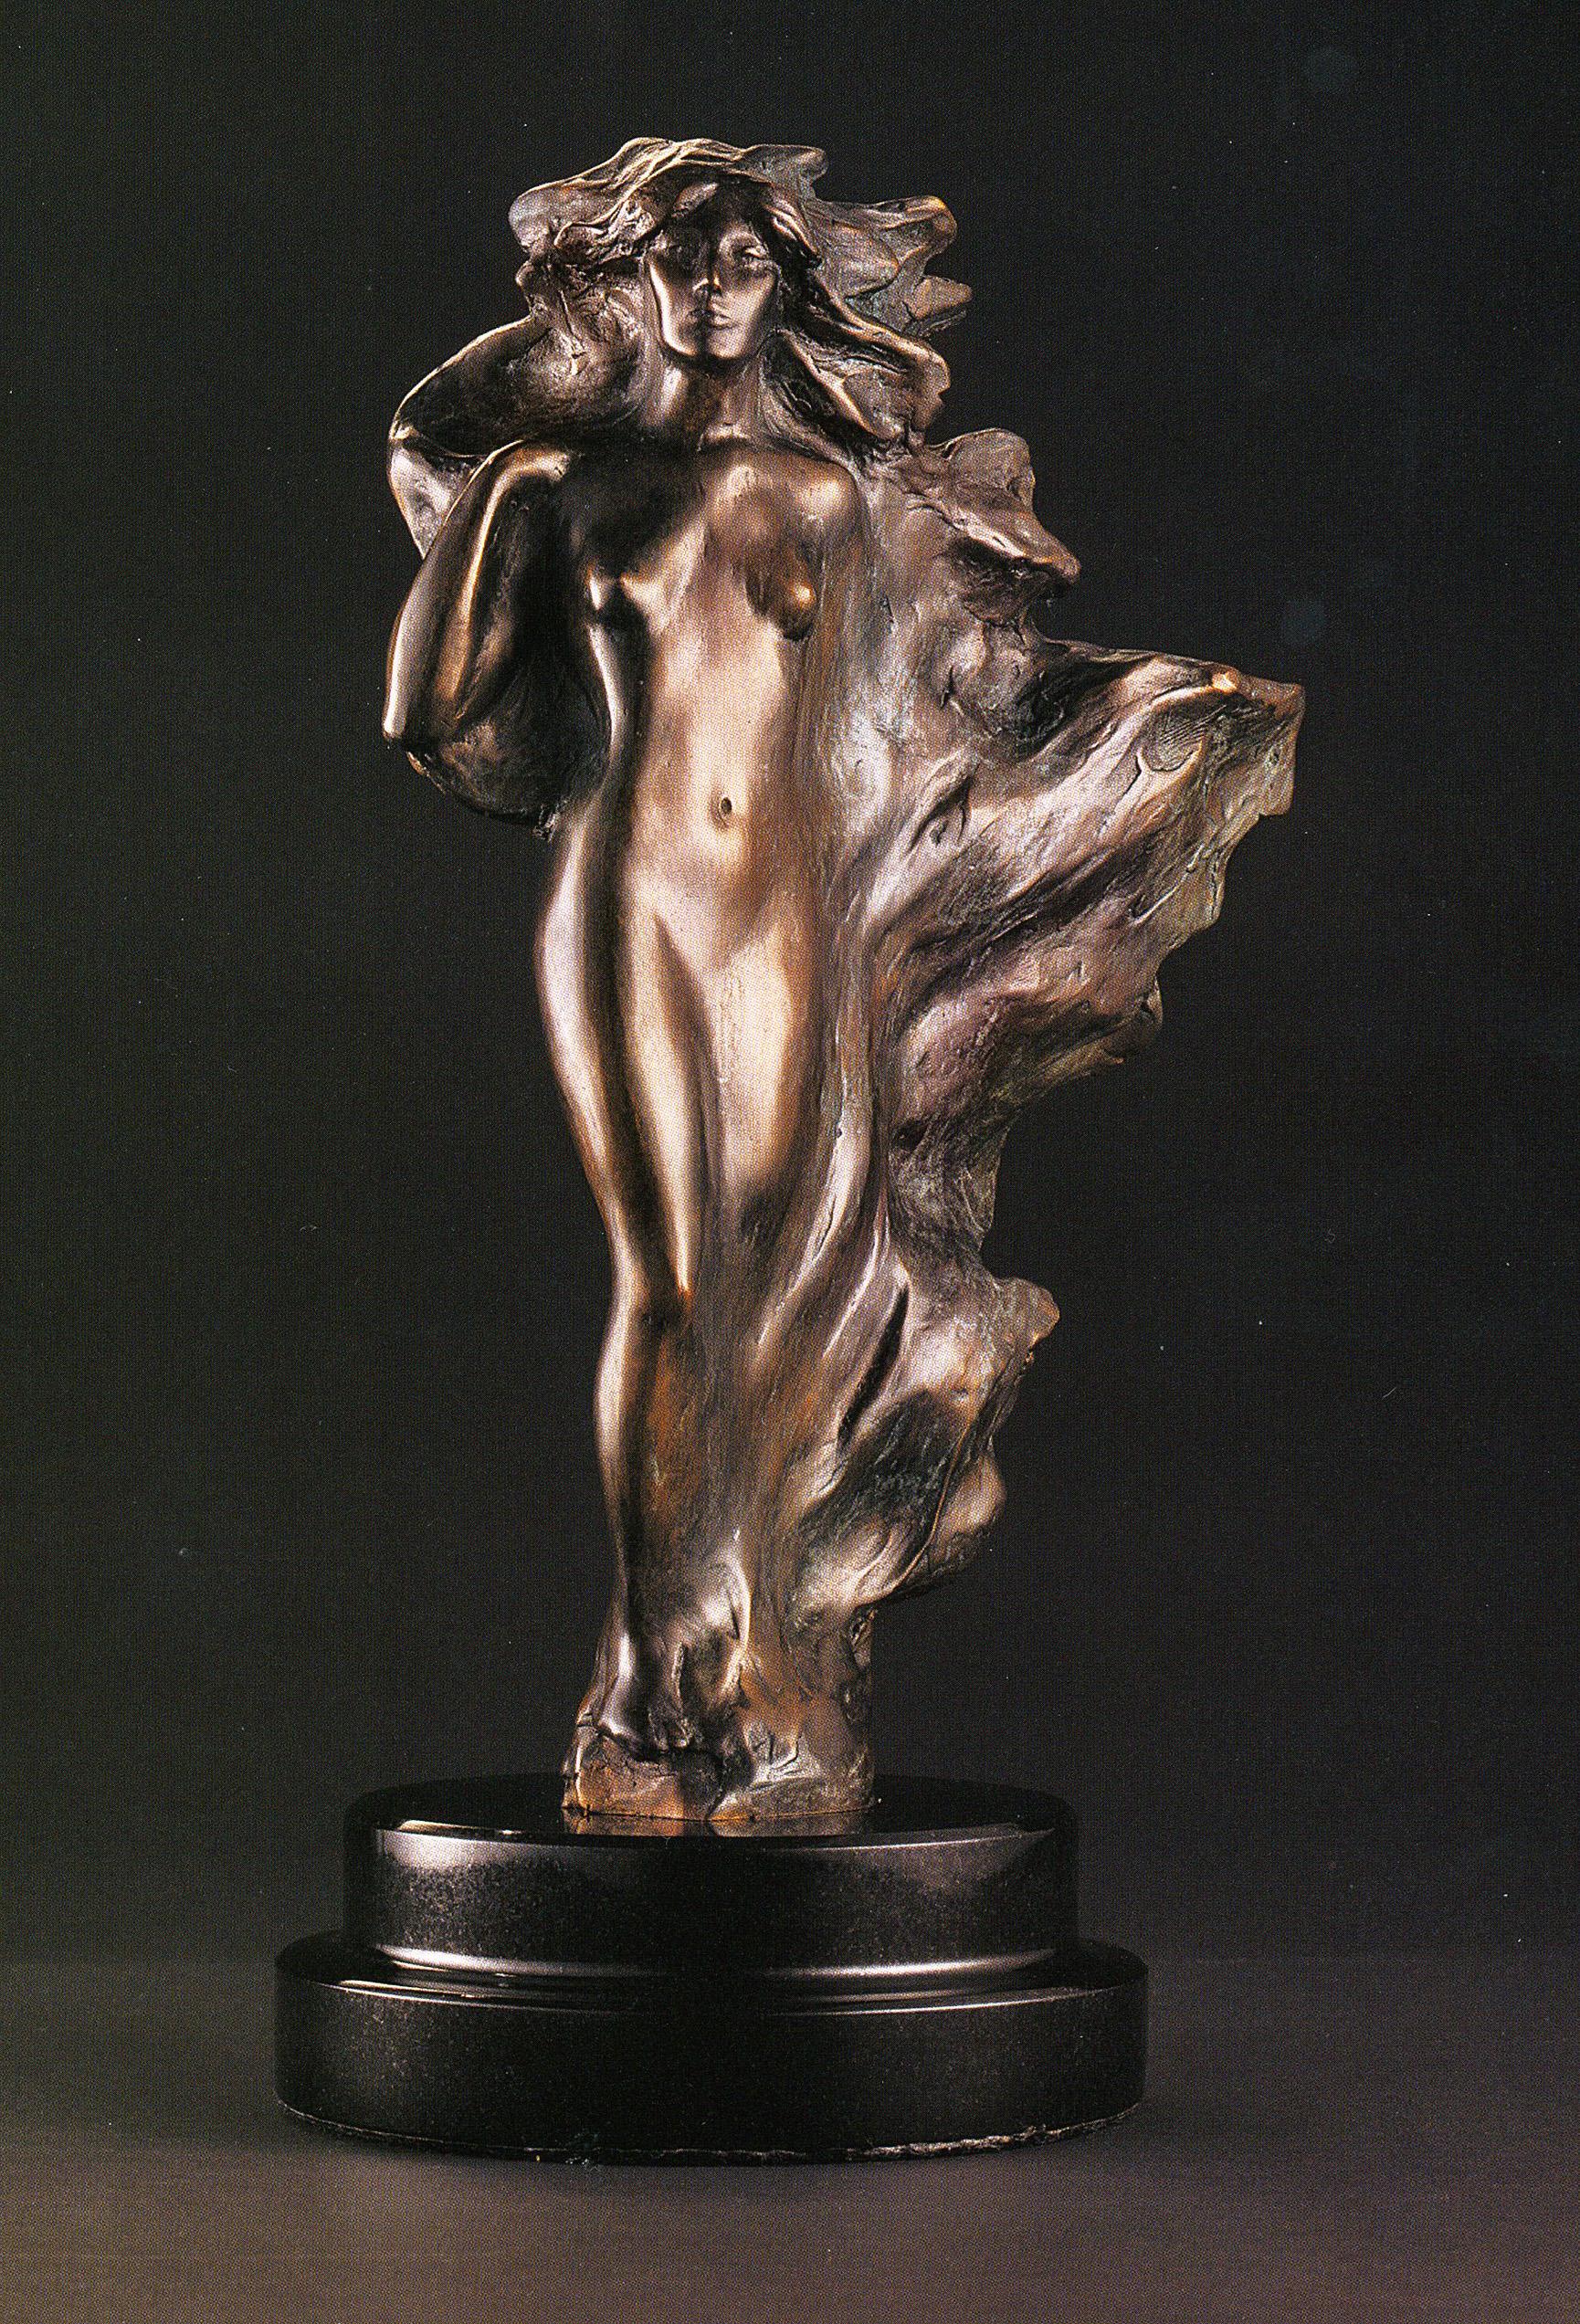 Frederick Hart ist der größte figurative Bildhauer Amerikas. Er schuf nicht nur Werke von großer Schönheit und Ernsthaftigkeit, sondern war auch in einzigartiger Weise dafür verantwortlich, dass die öffentlichen Denkmäler und Gedenkstätten in